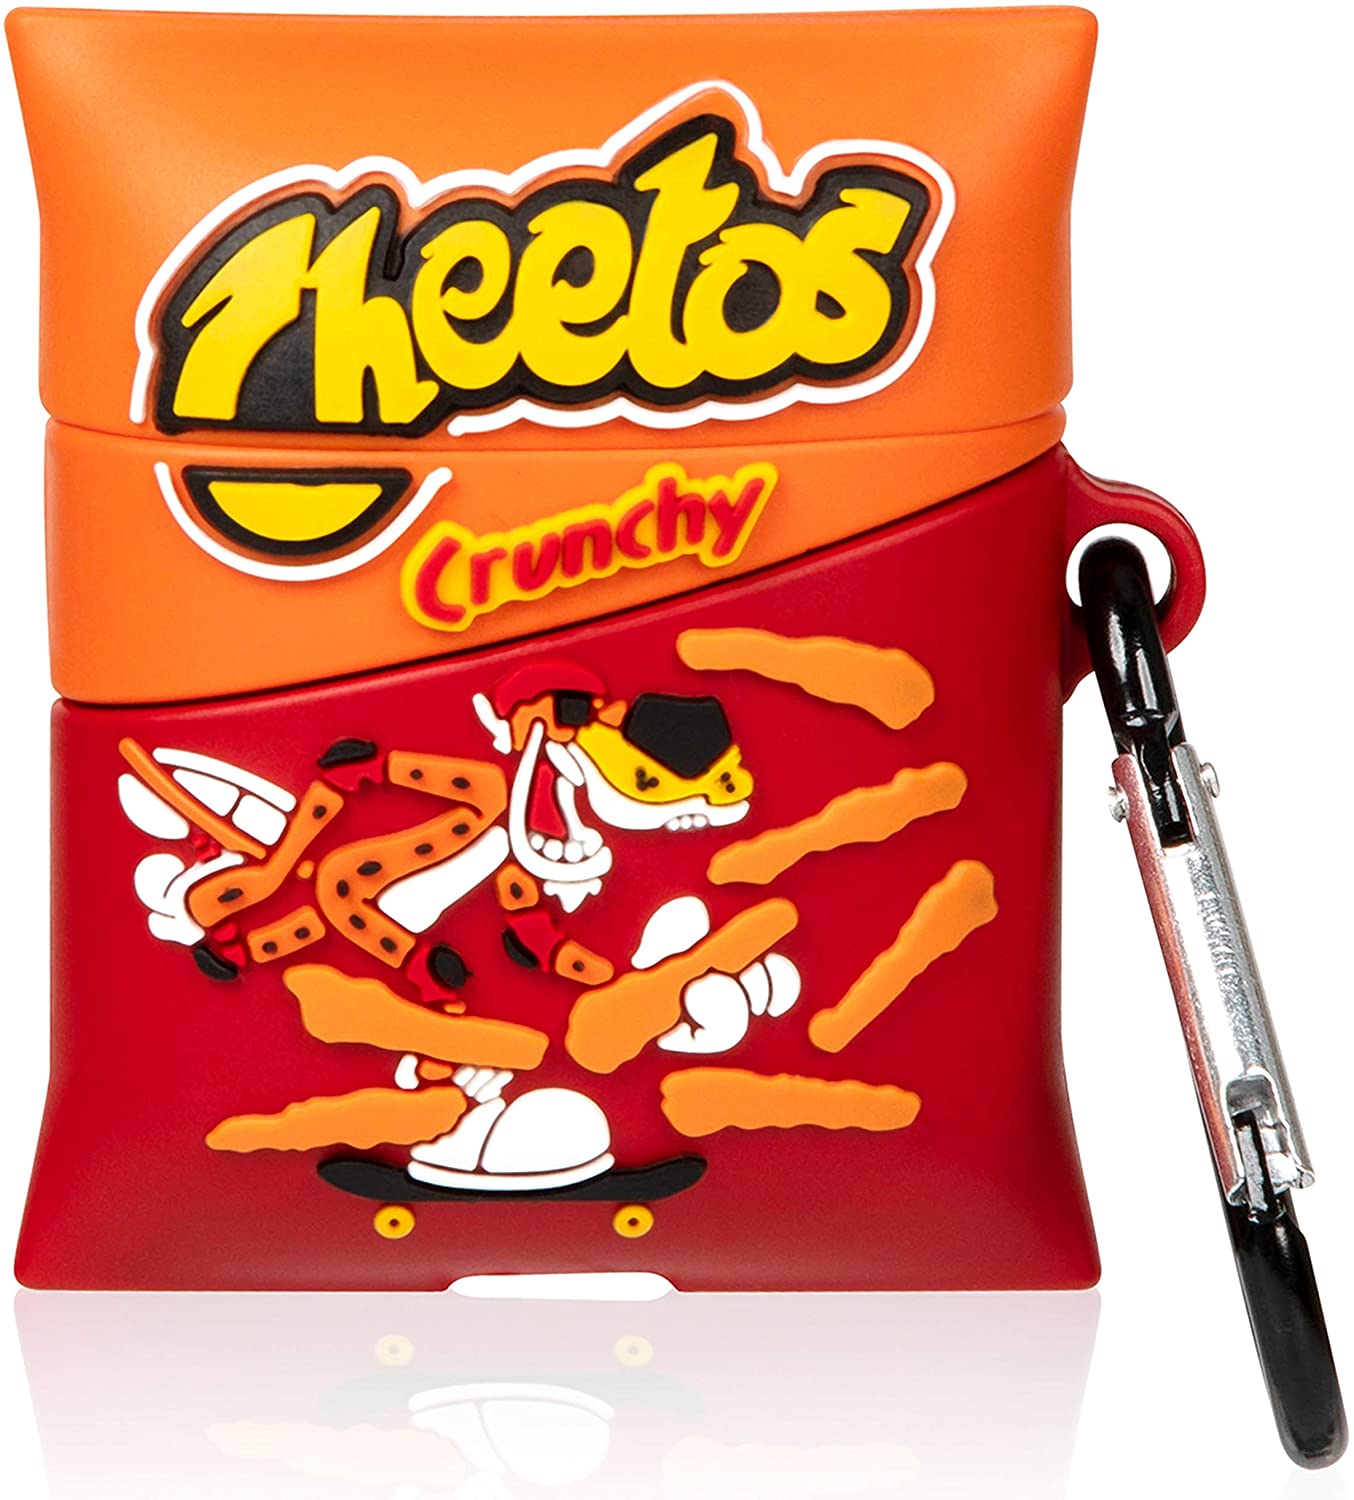 Cheetos AirPods case - Milottie